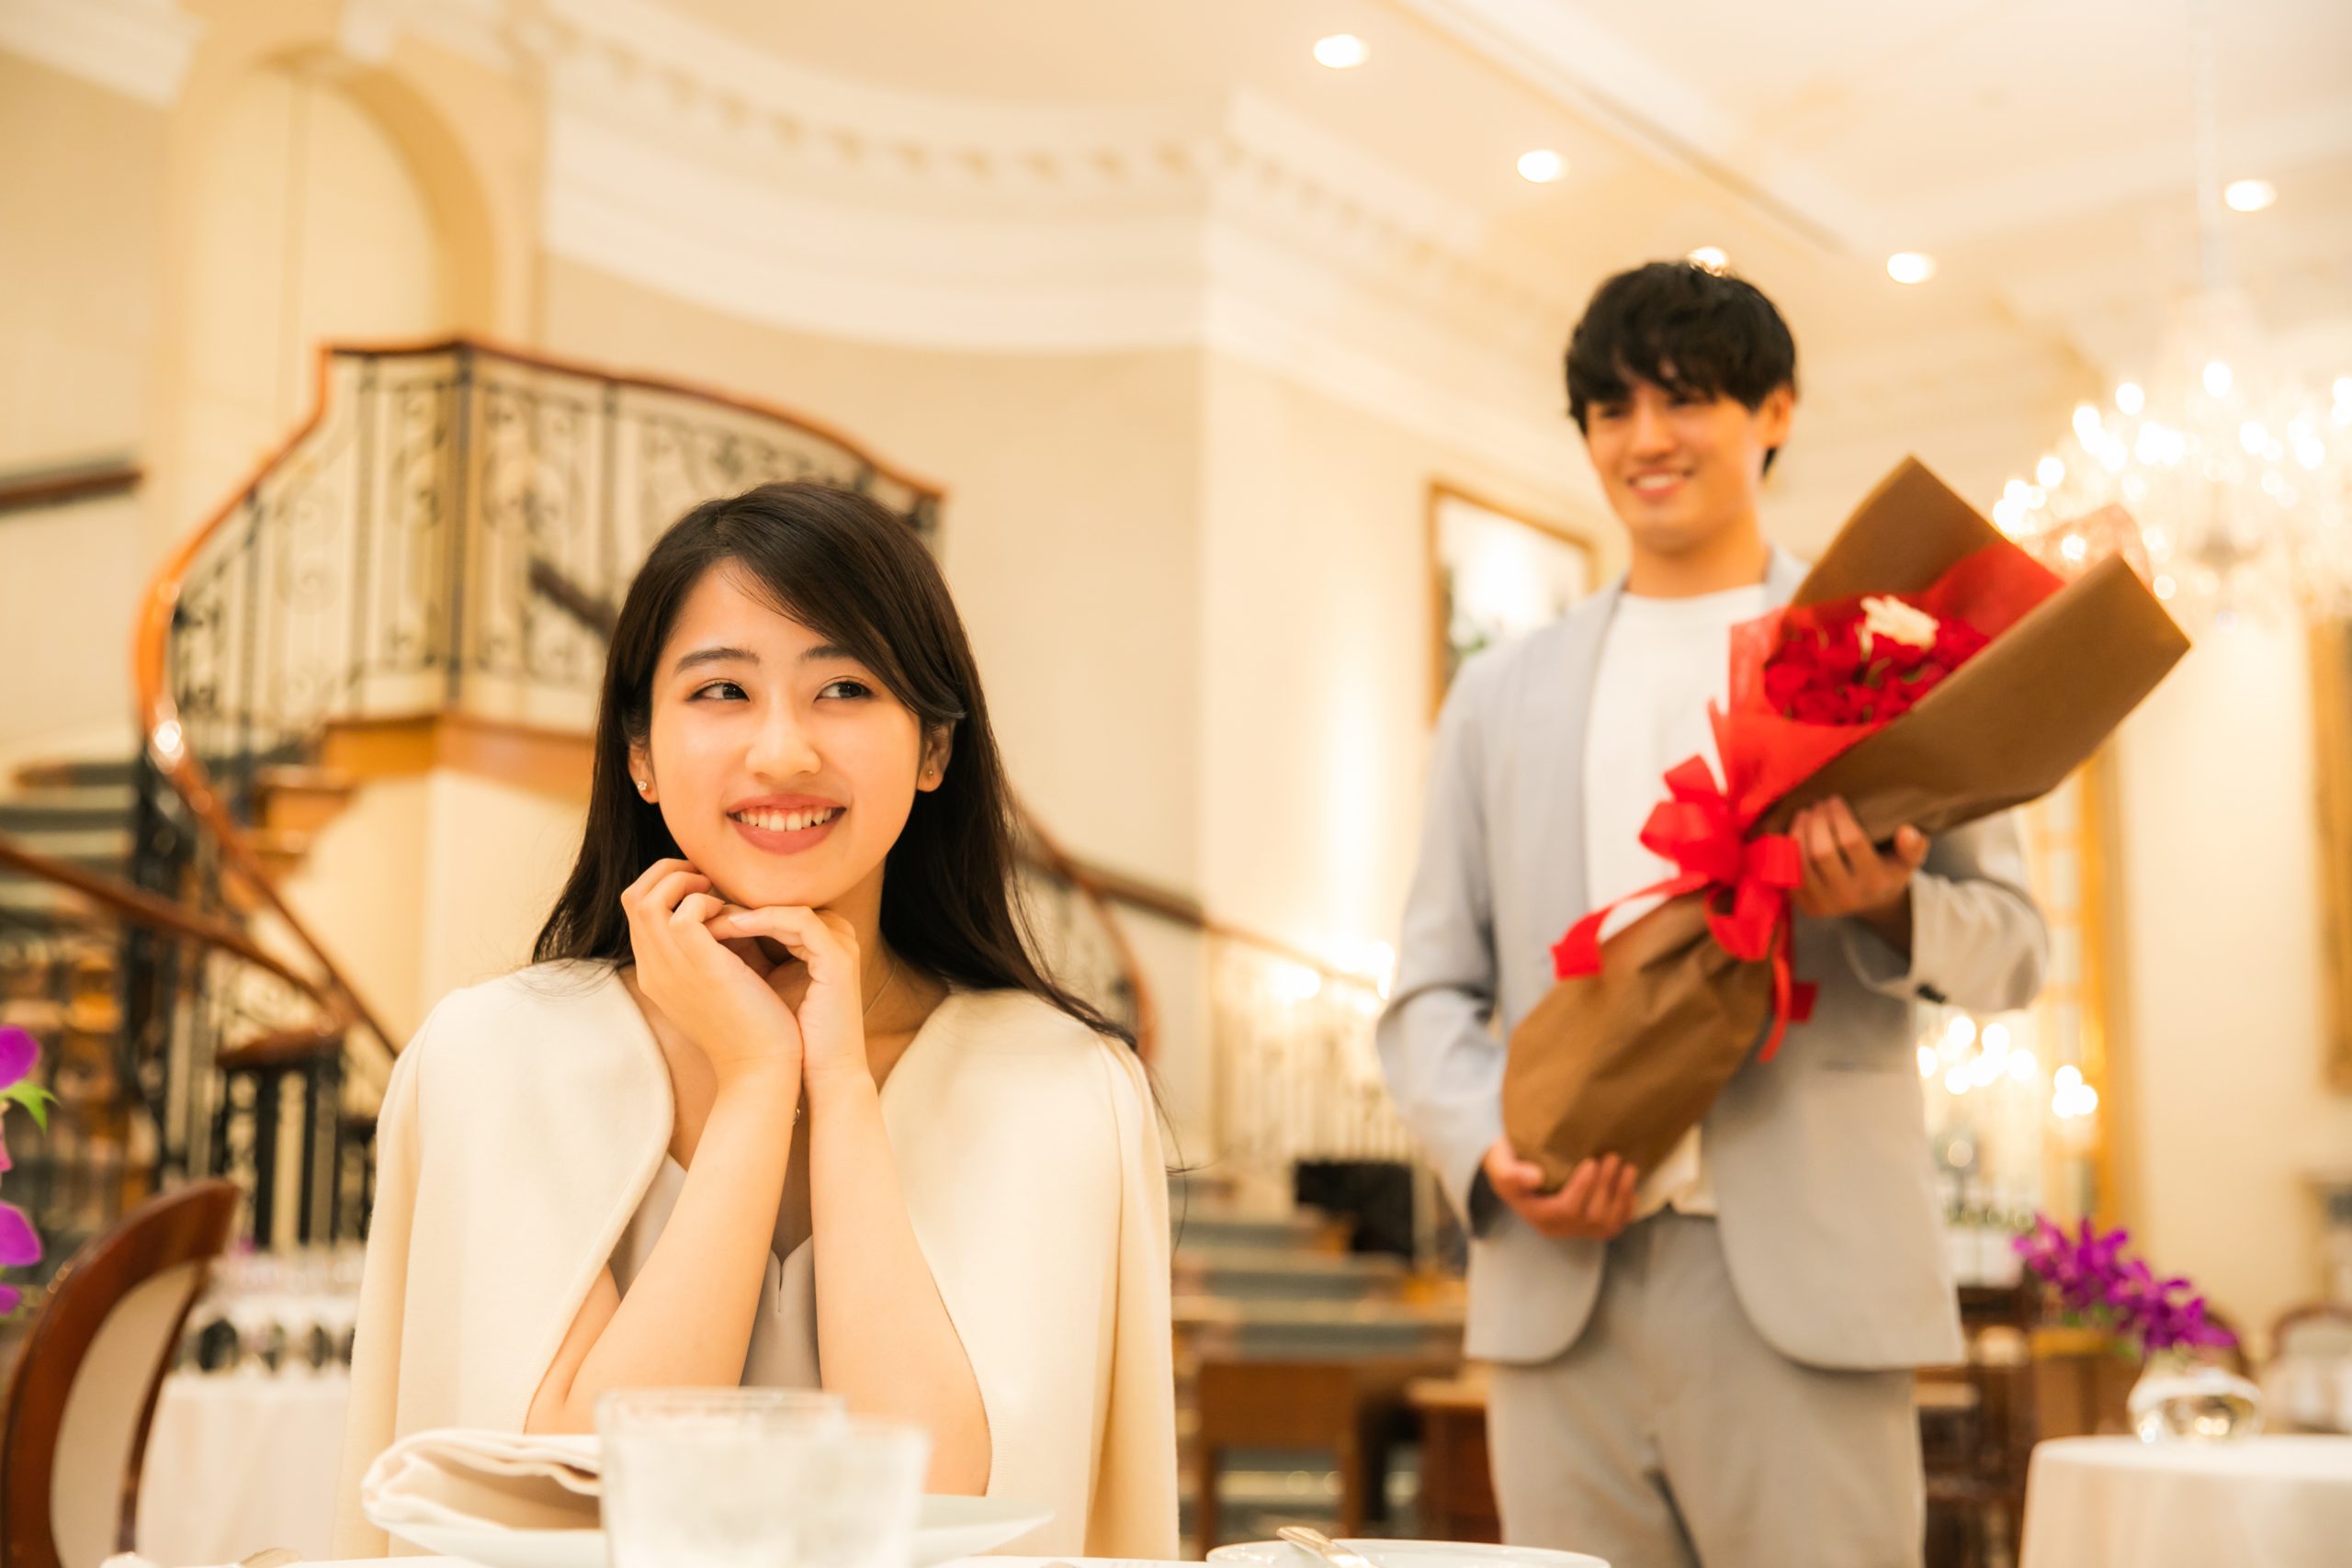 レストランでのプロポーズを待つ女性と花束を持って近づく男性